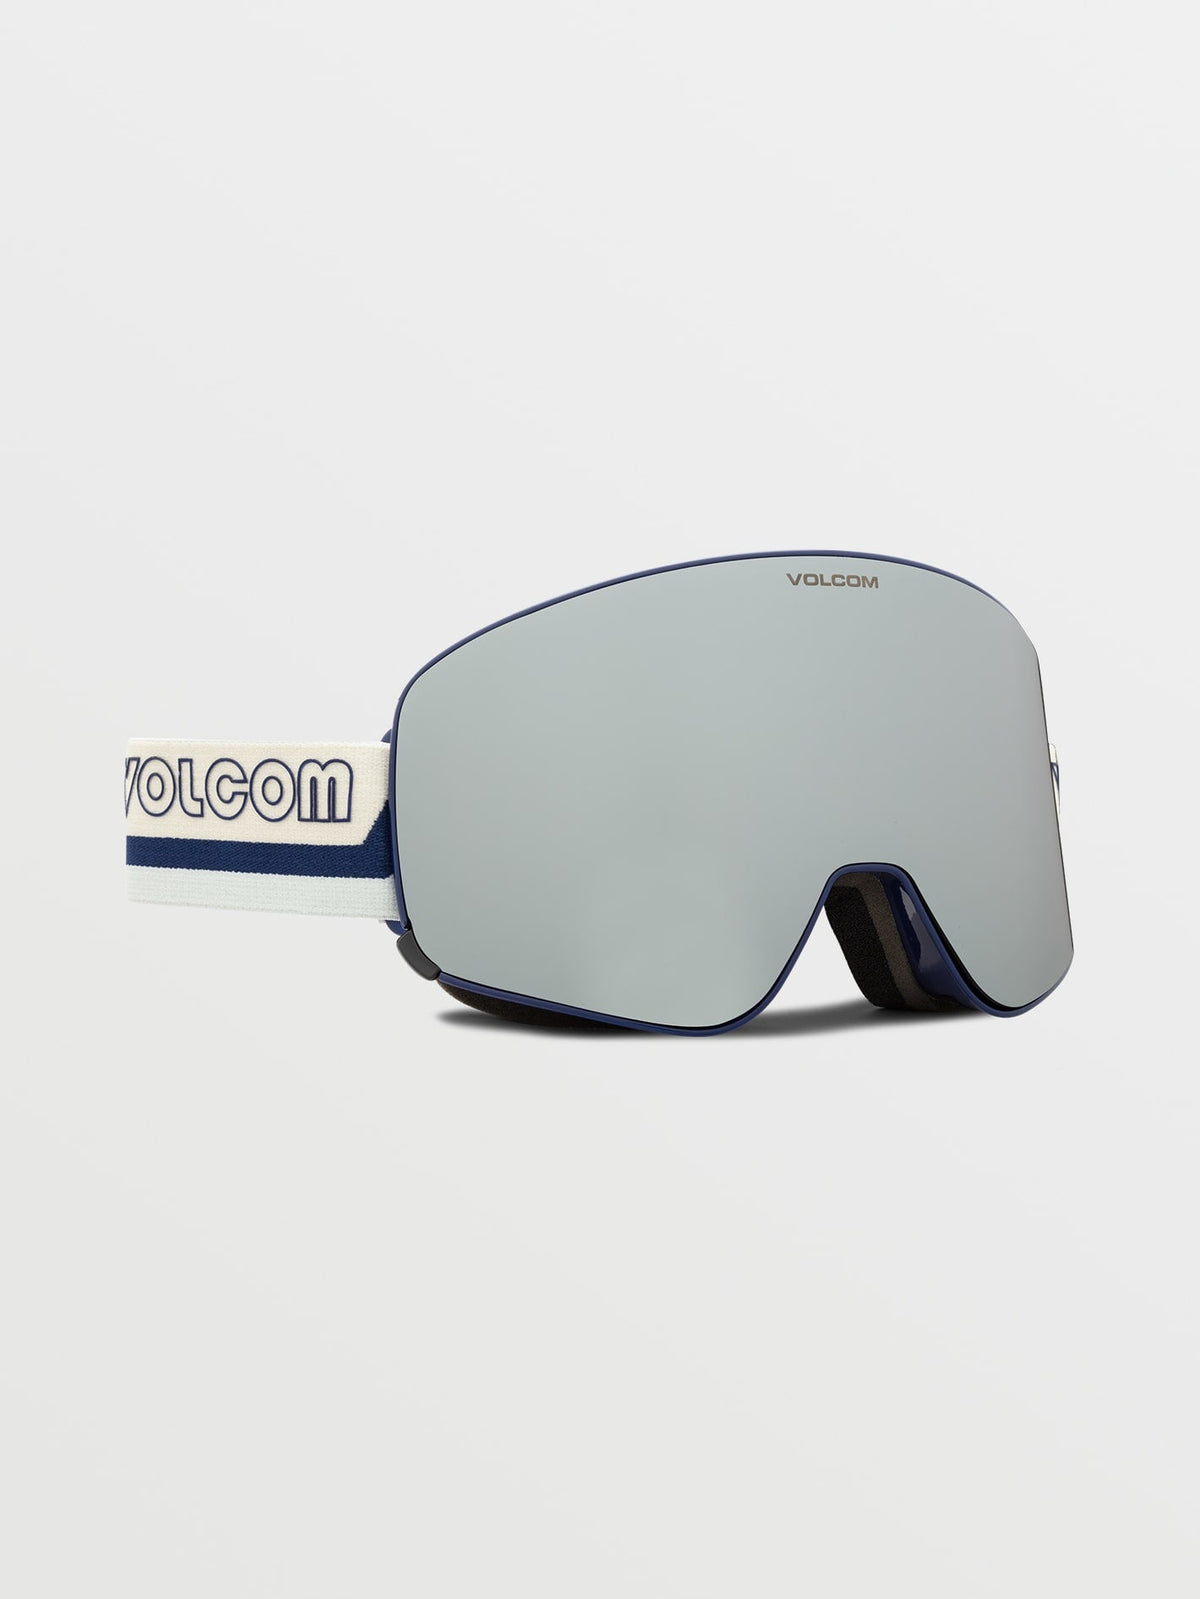 Volcom Odyssey Goggle with Bonus Lens Dark Blue/silver Chrome